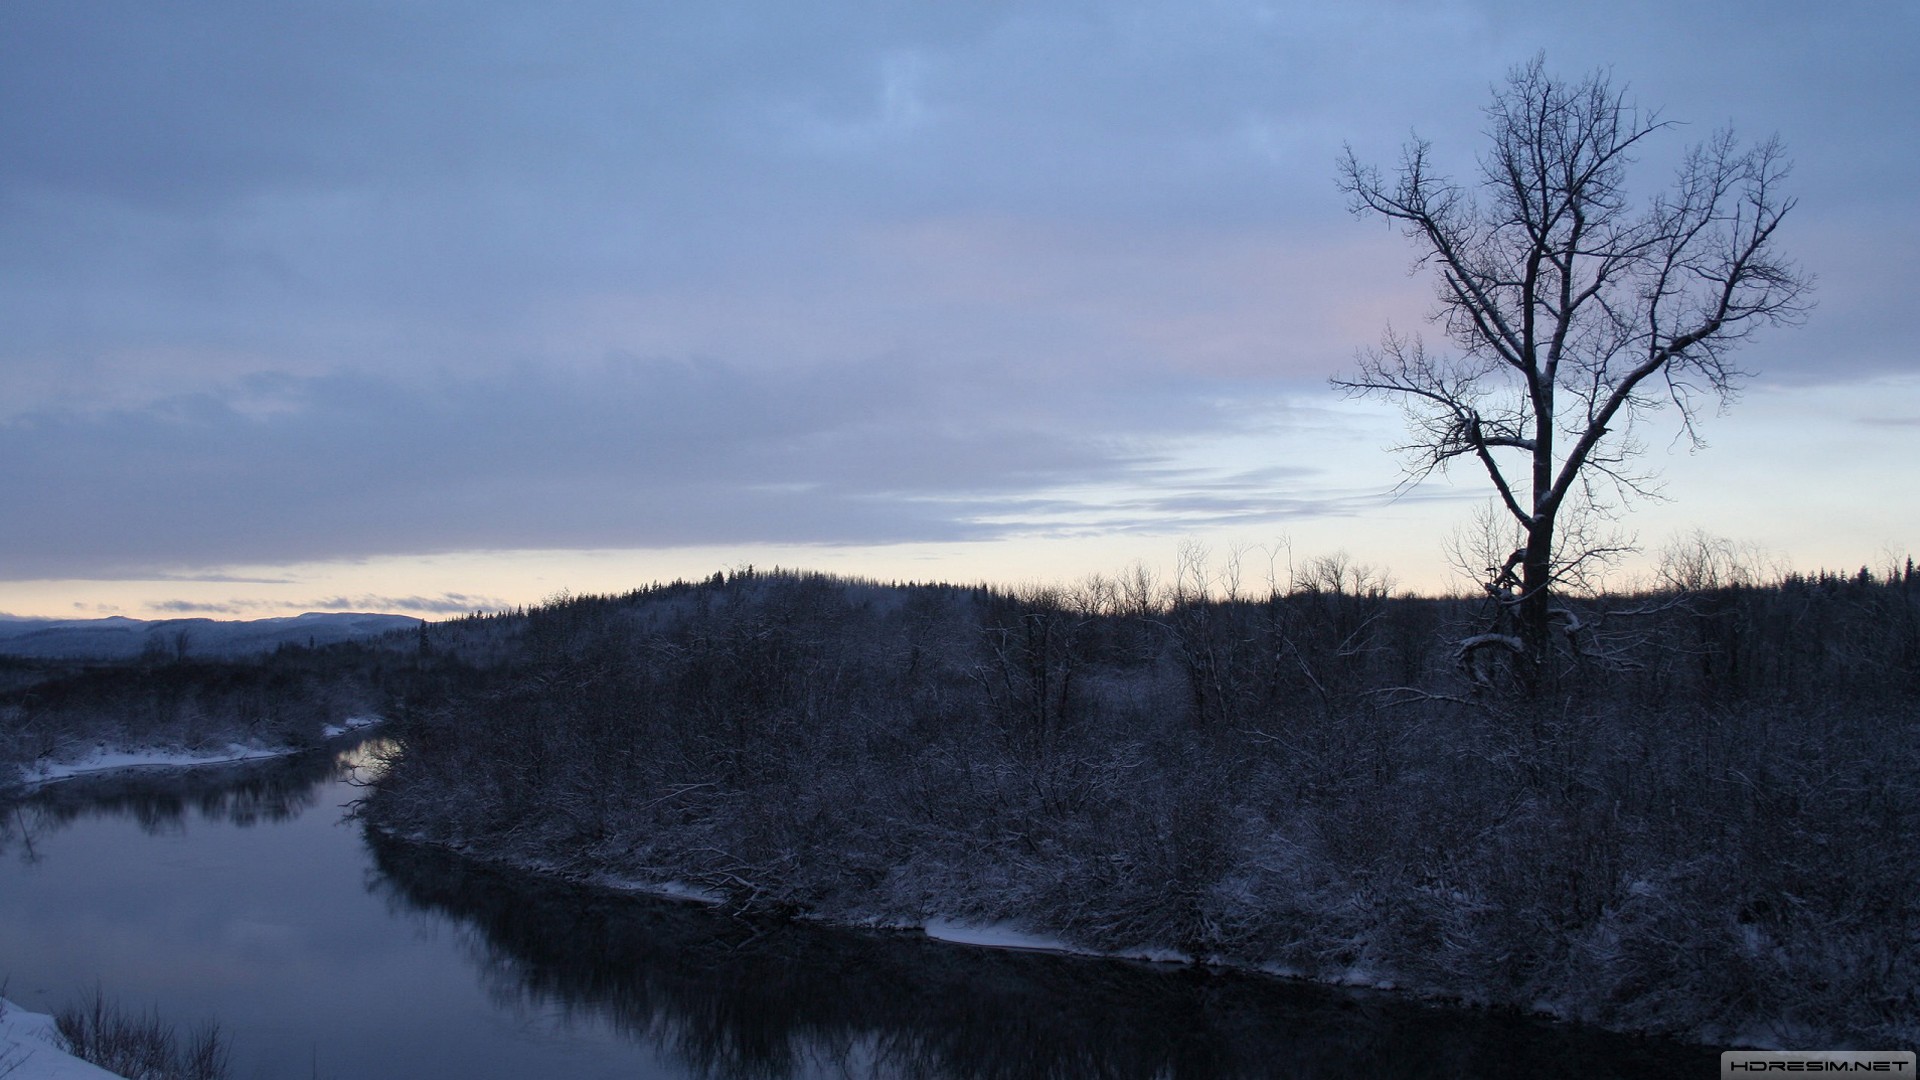 nehir,gece,ağaç,doğa,kış